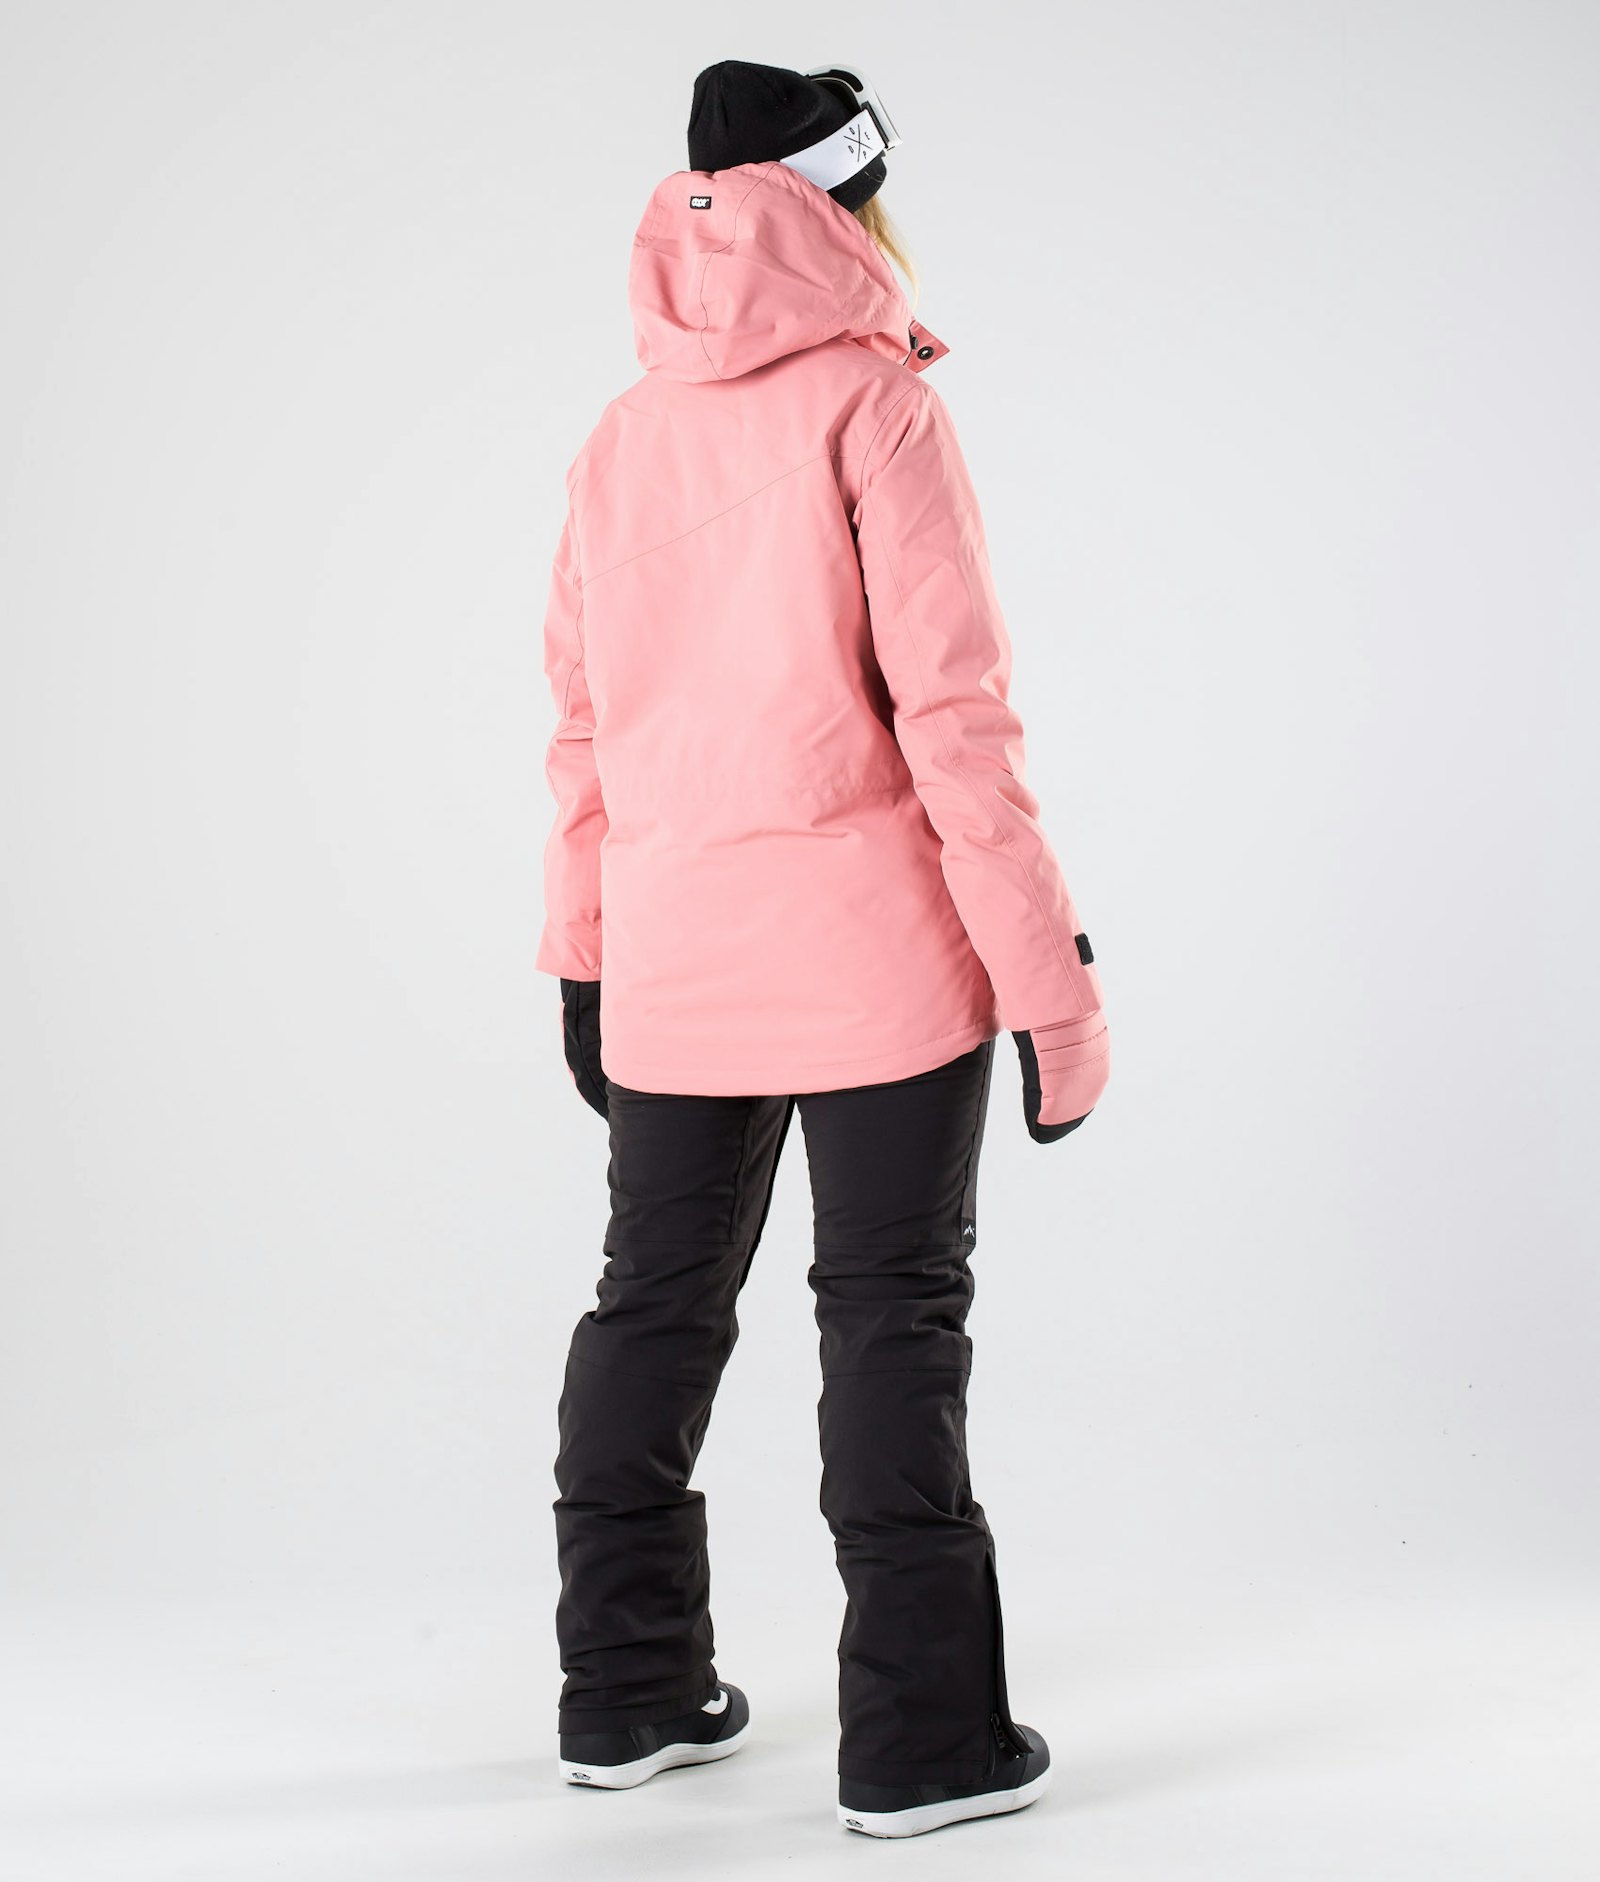 Adept W 2019 Veste Snowboard Femme Pink